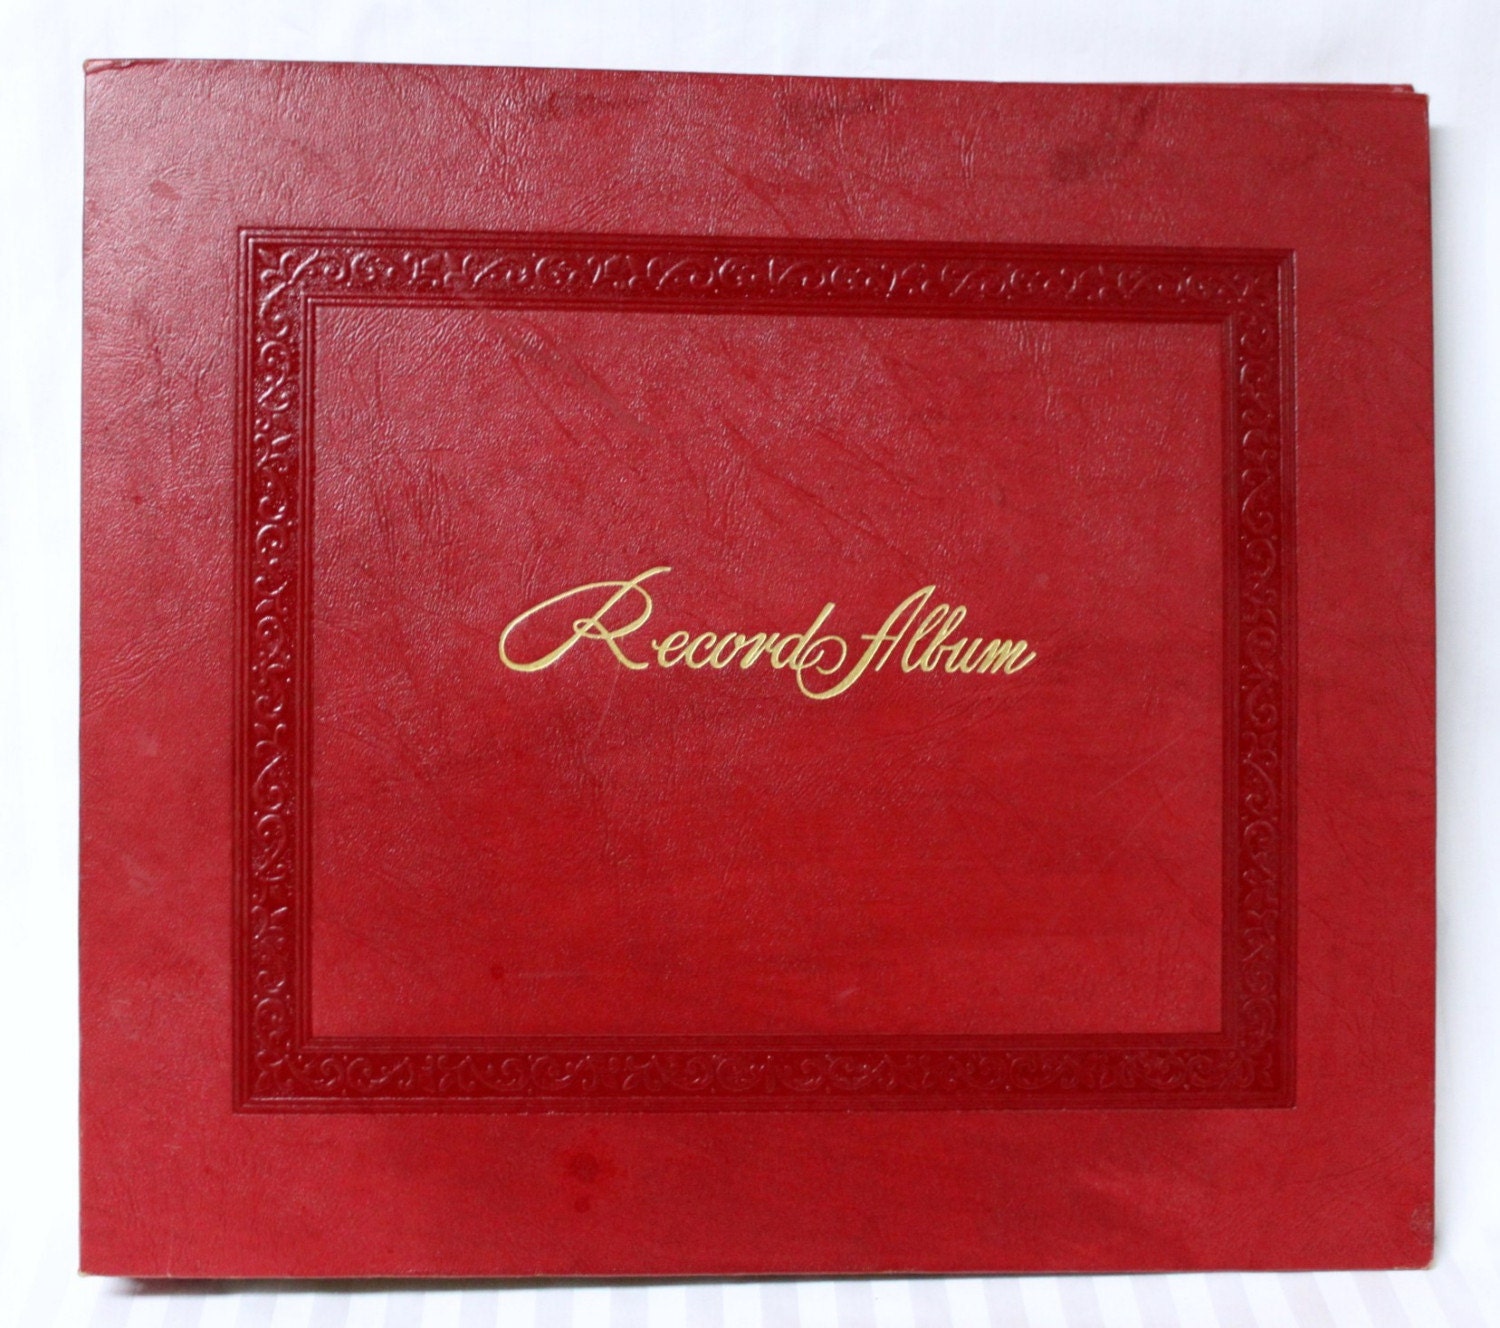 Vtg Decca Vinyl Record Album